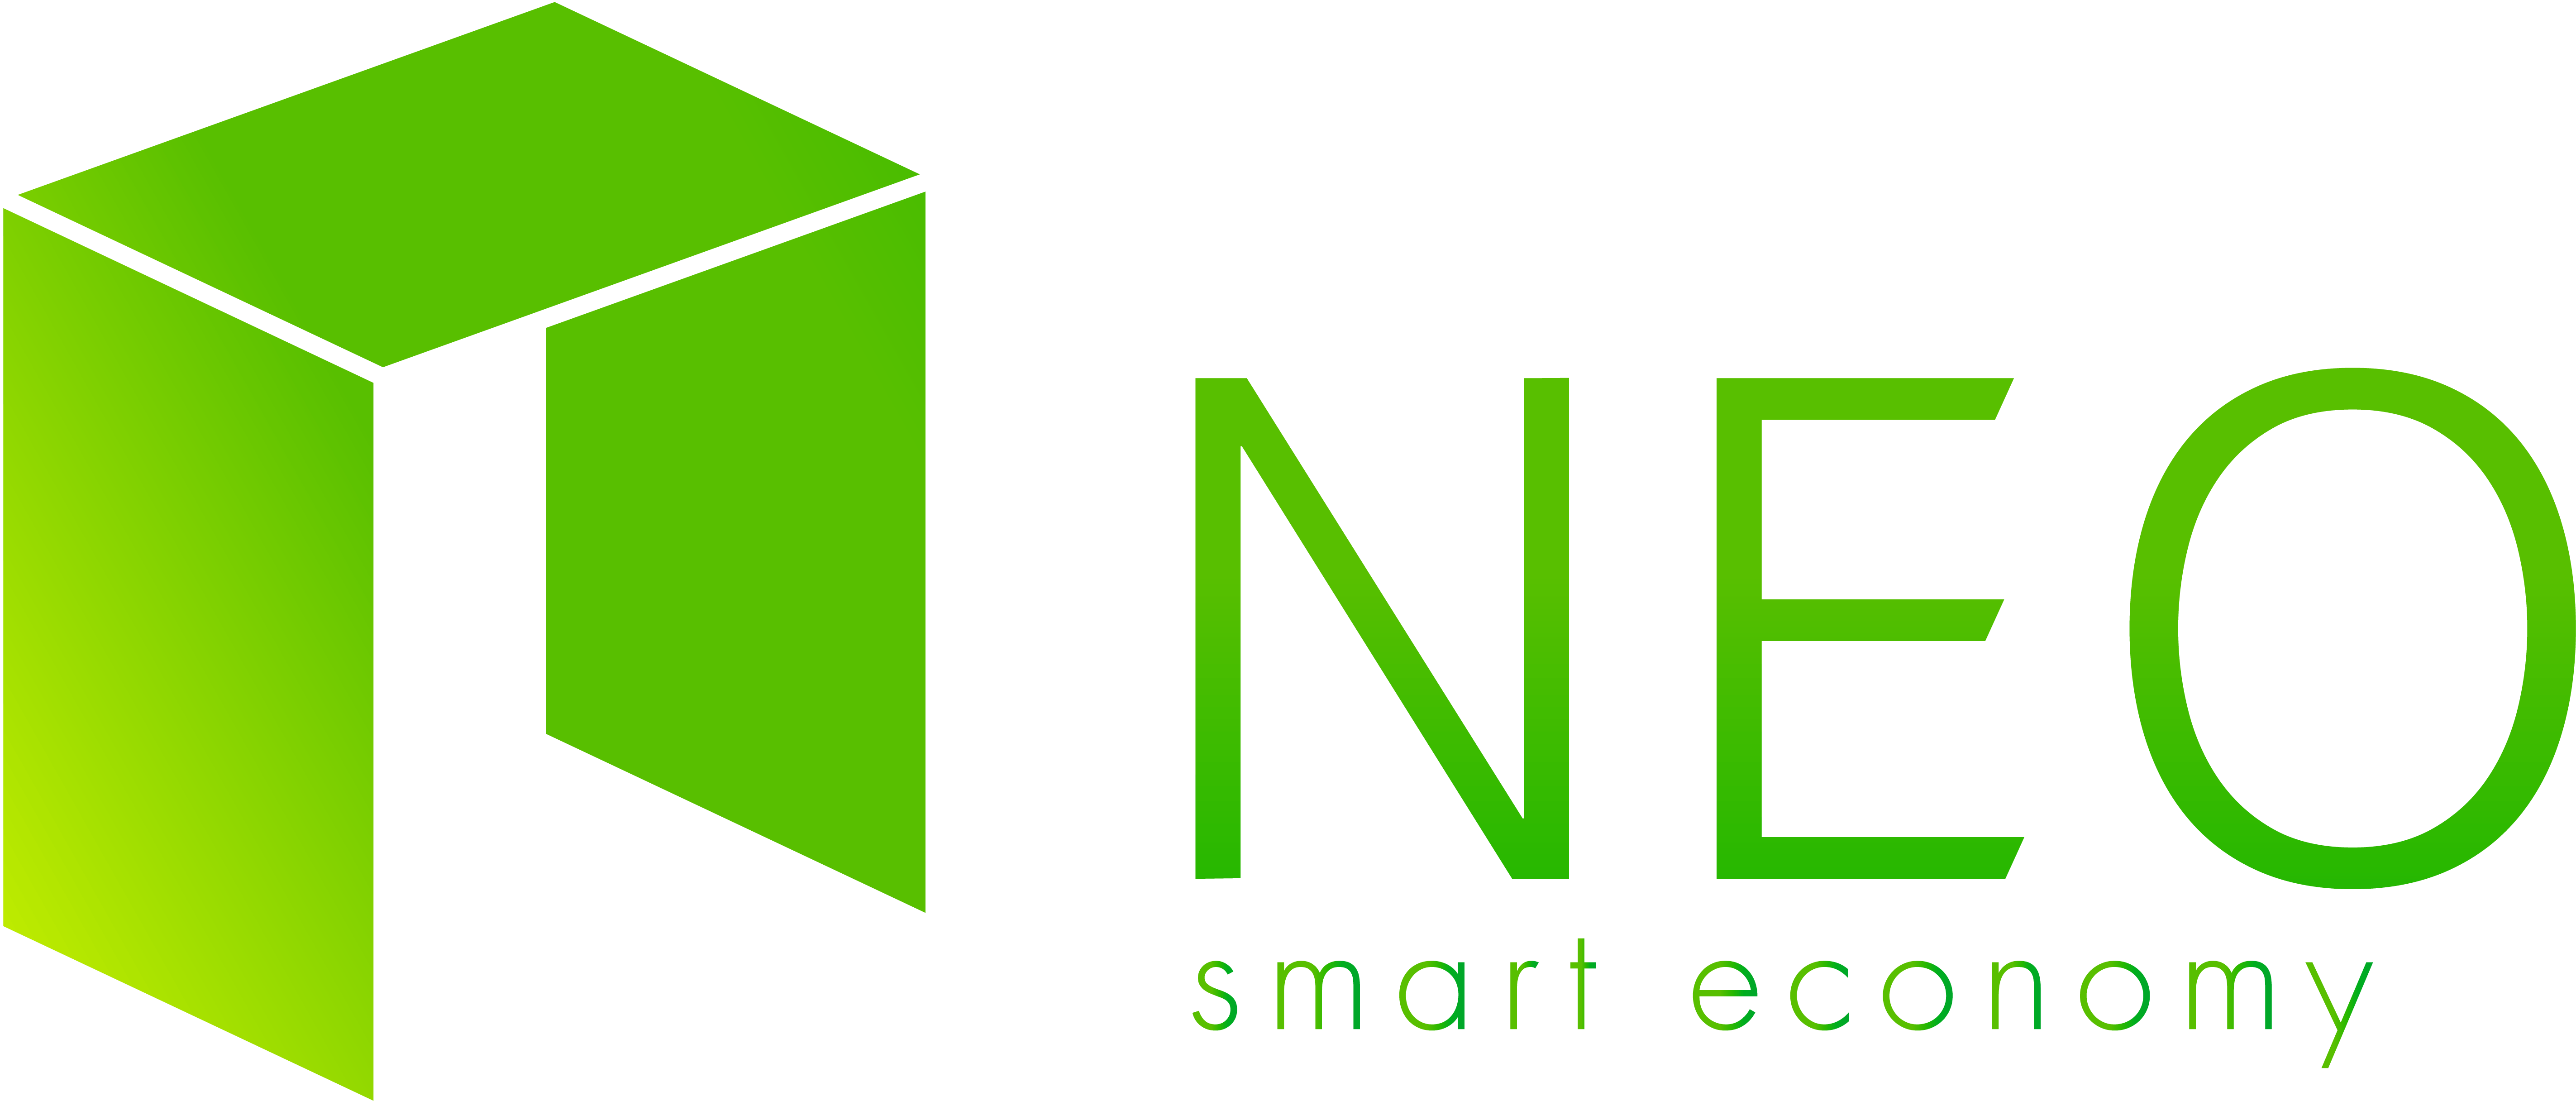 NEO Logo (Coin)